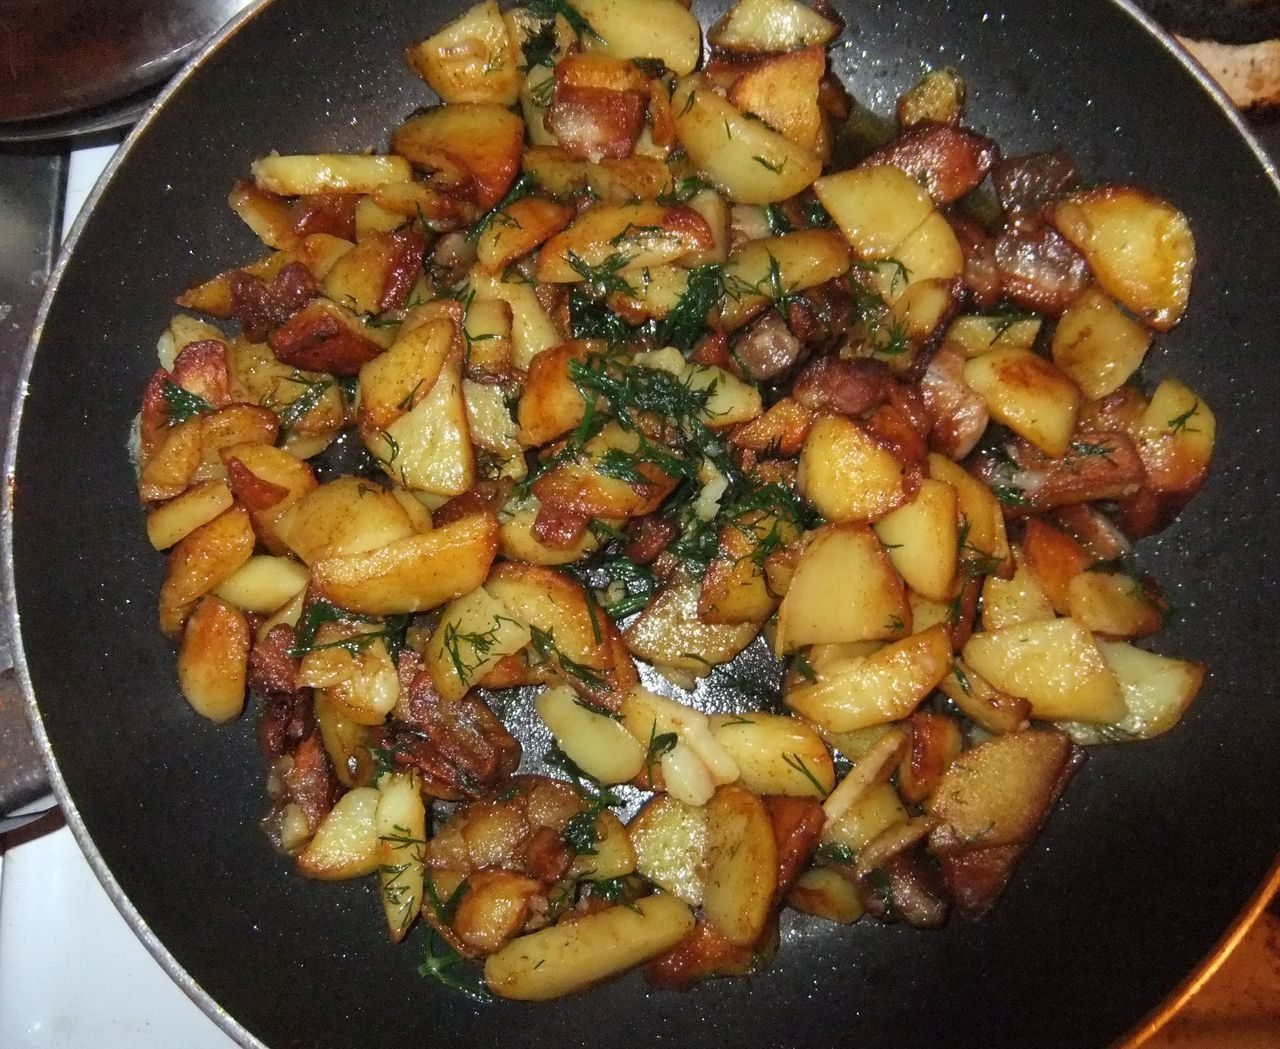 Как пожарить картошку на сковороде пошагово